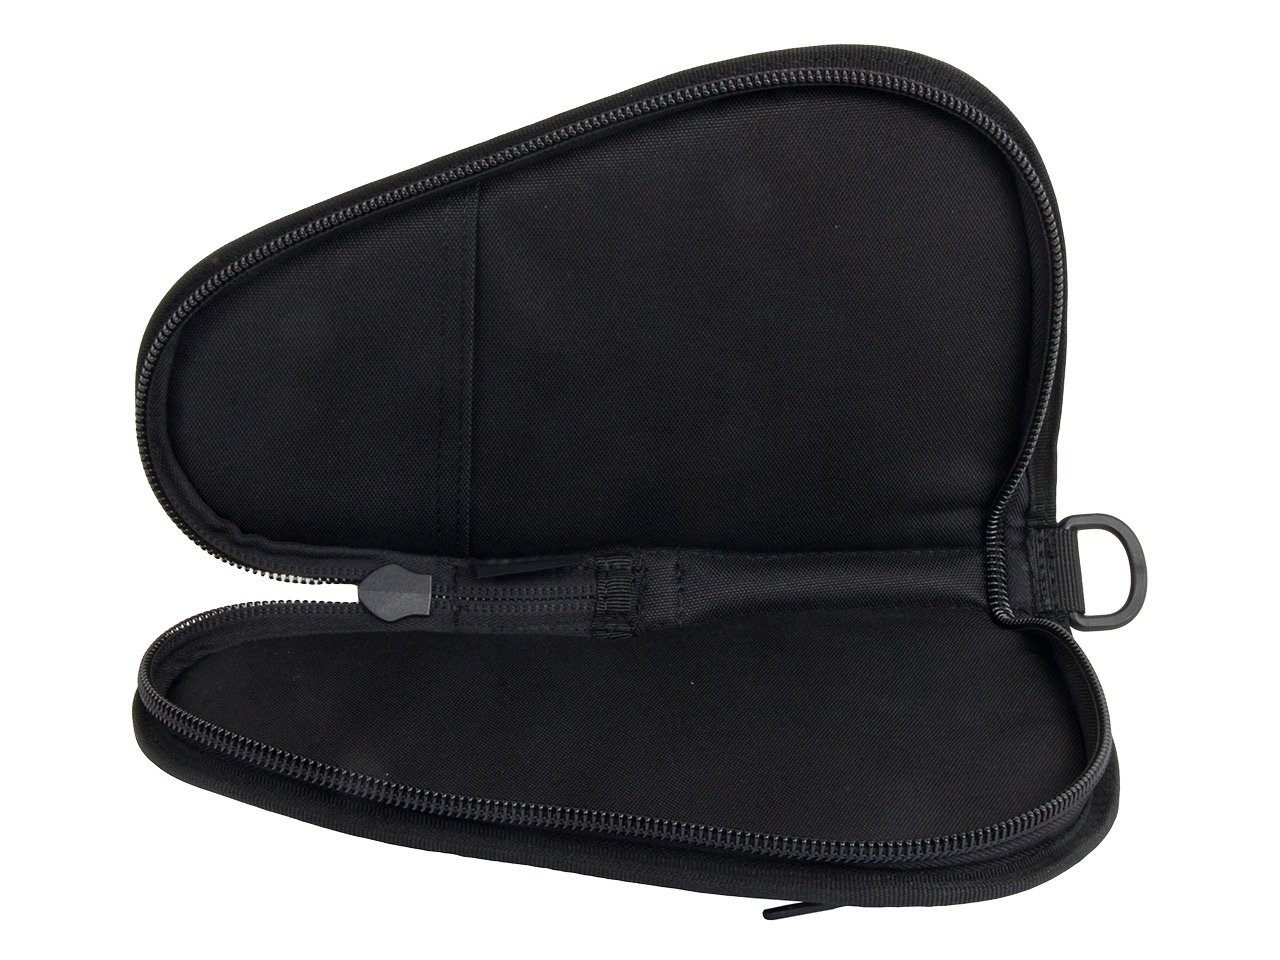 Pistolenfutteral Pistolentasche Transporttasche Coptex 24 x 13 cm abschließbar für kleine Pistolen und Revolver bis zu 2,5 Zoll schwarz